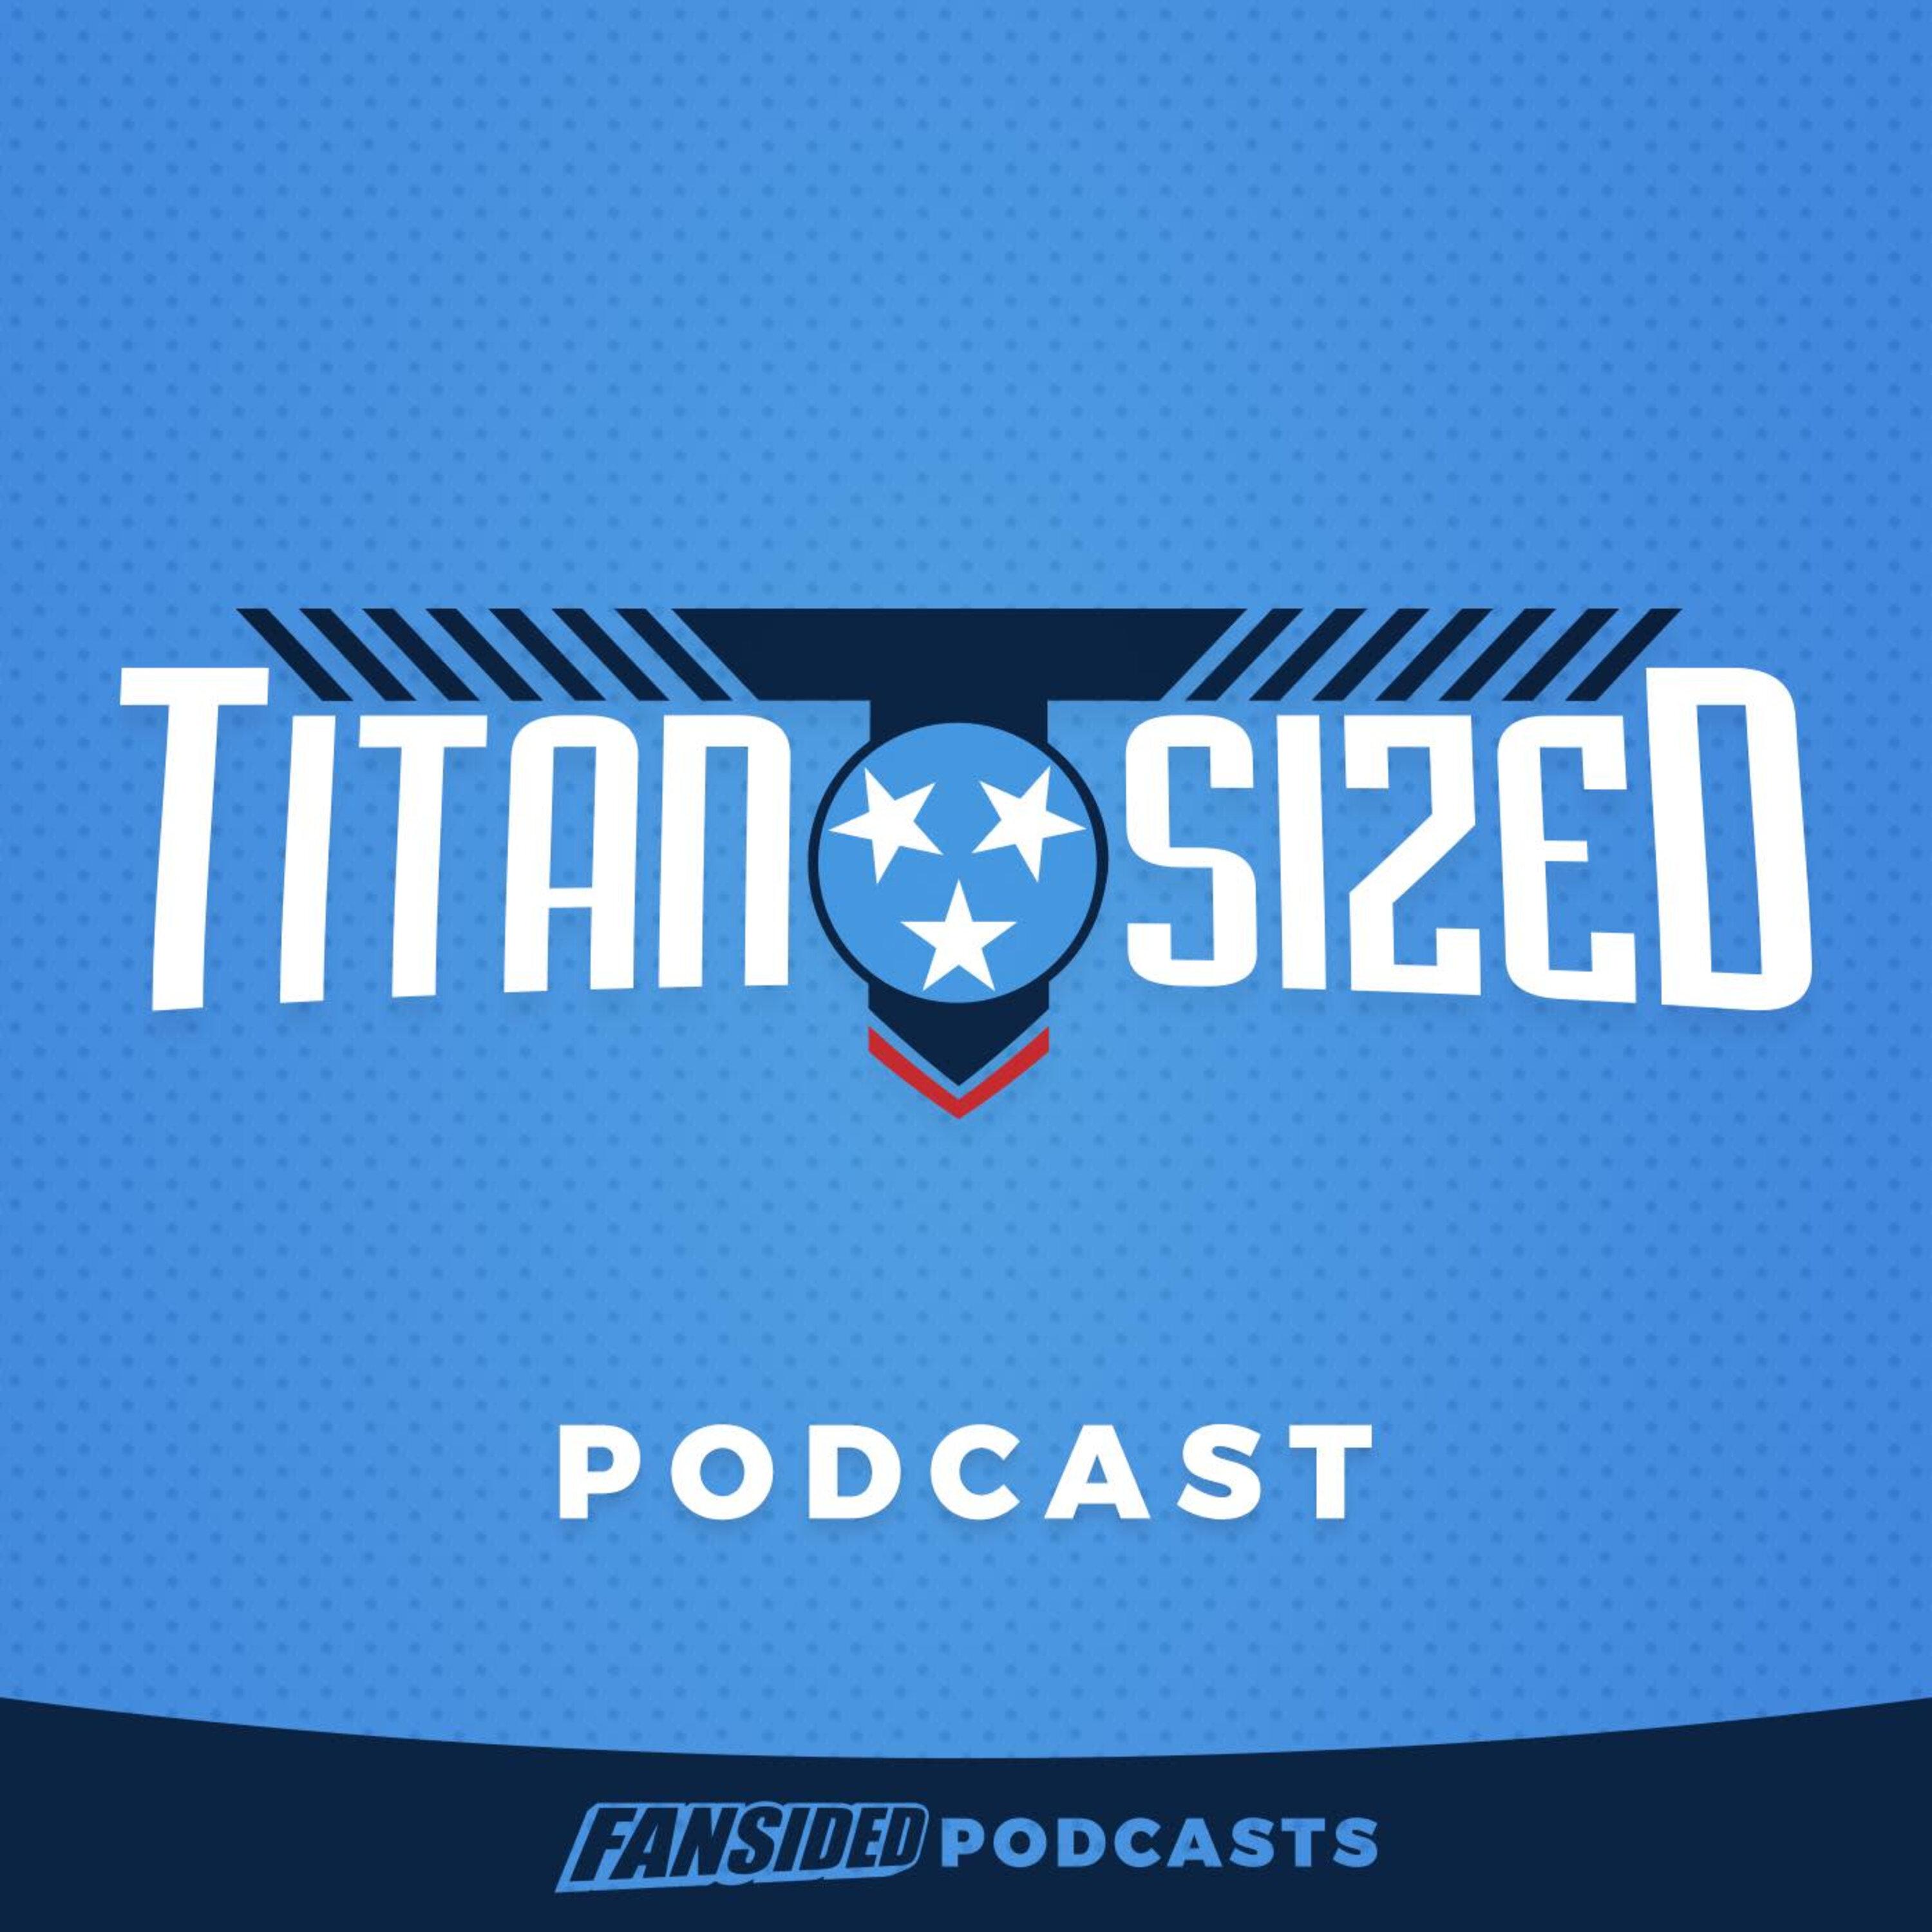 Titan Sized Podcast